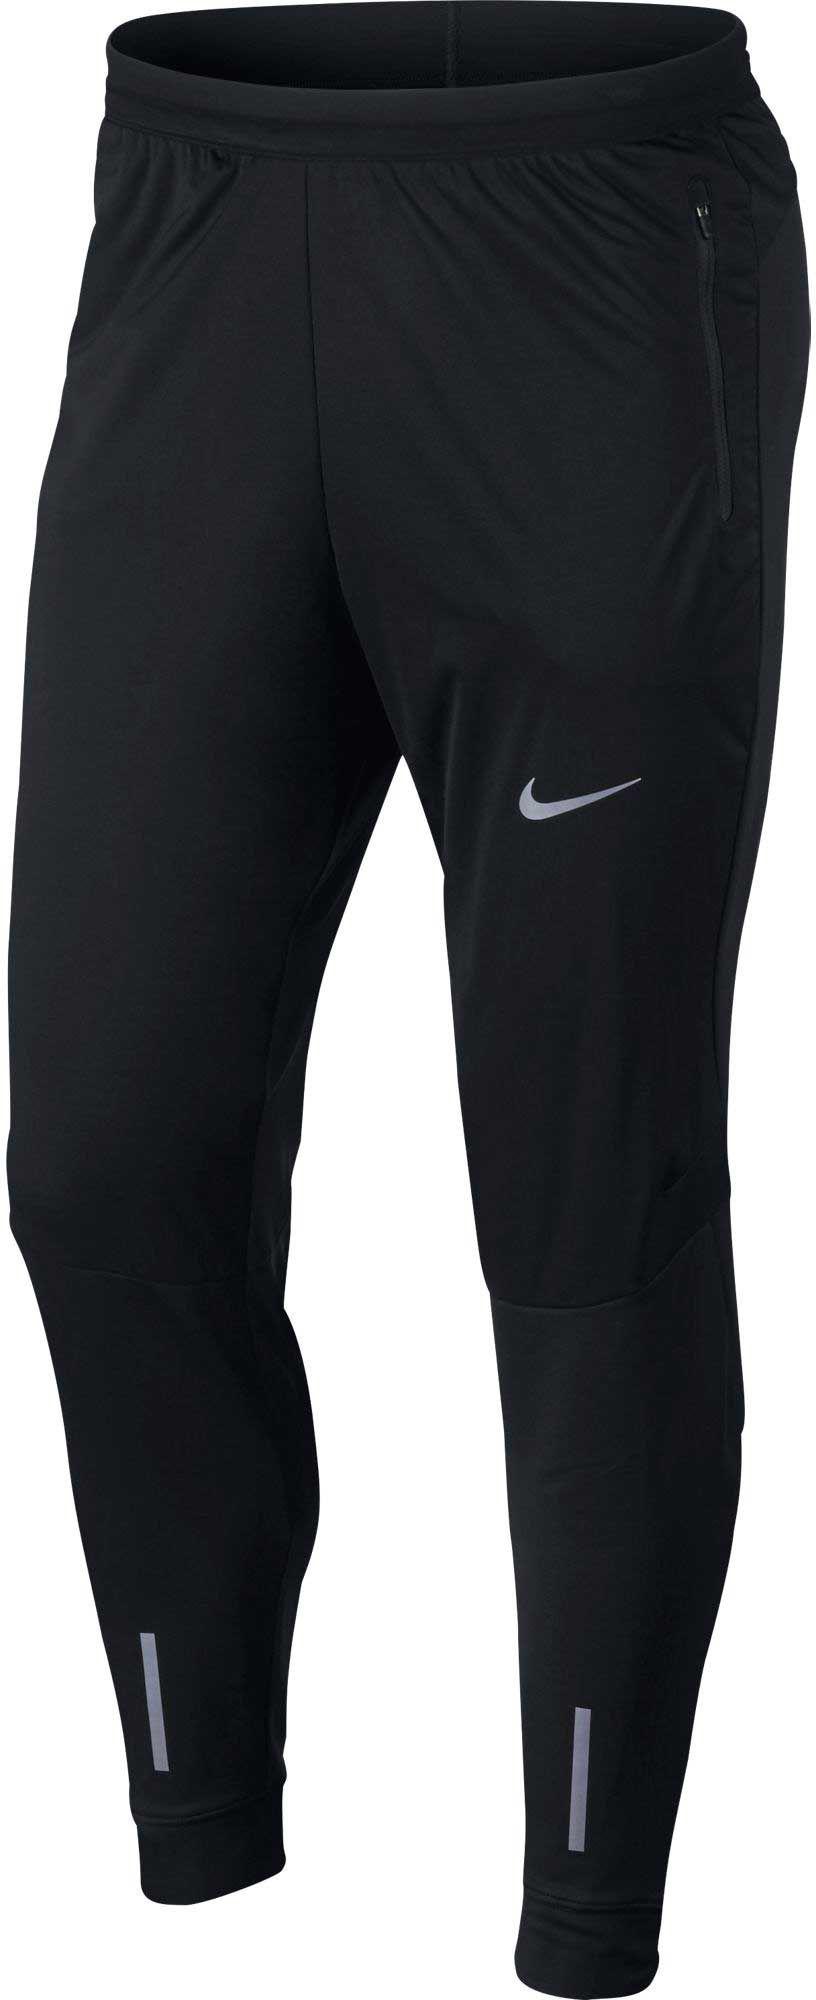 Nike Fleece Shield Phenom Running Pants in Black for Men - Lyst